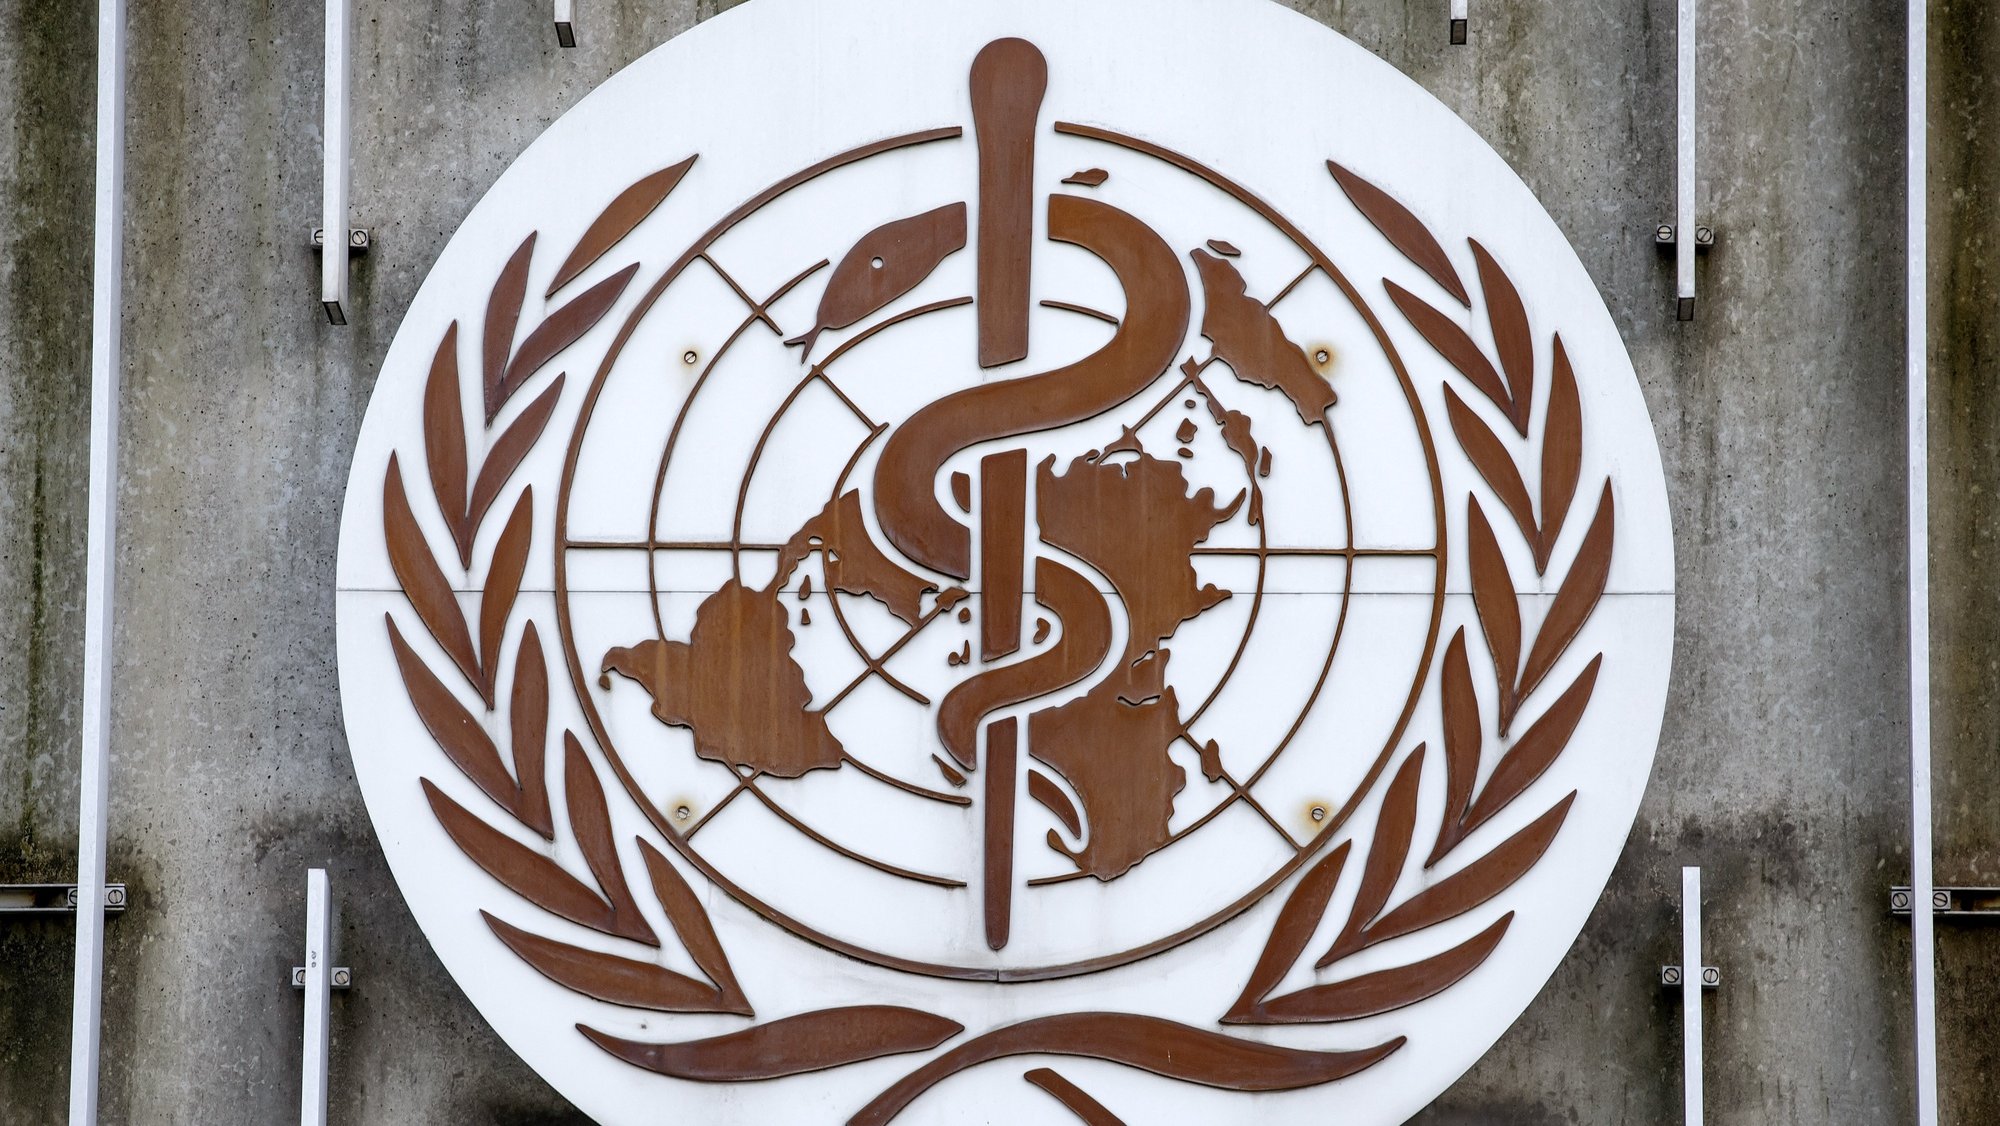 Logotipo da Organização Mundial de Saúde